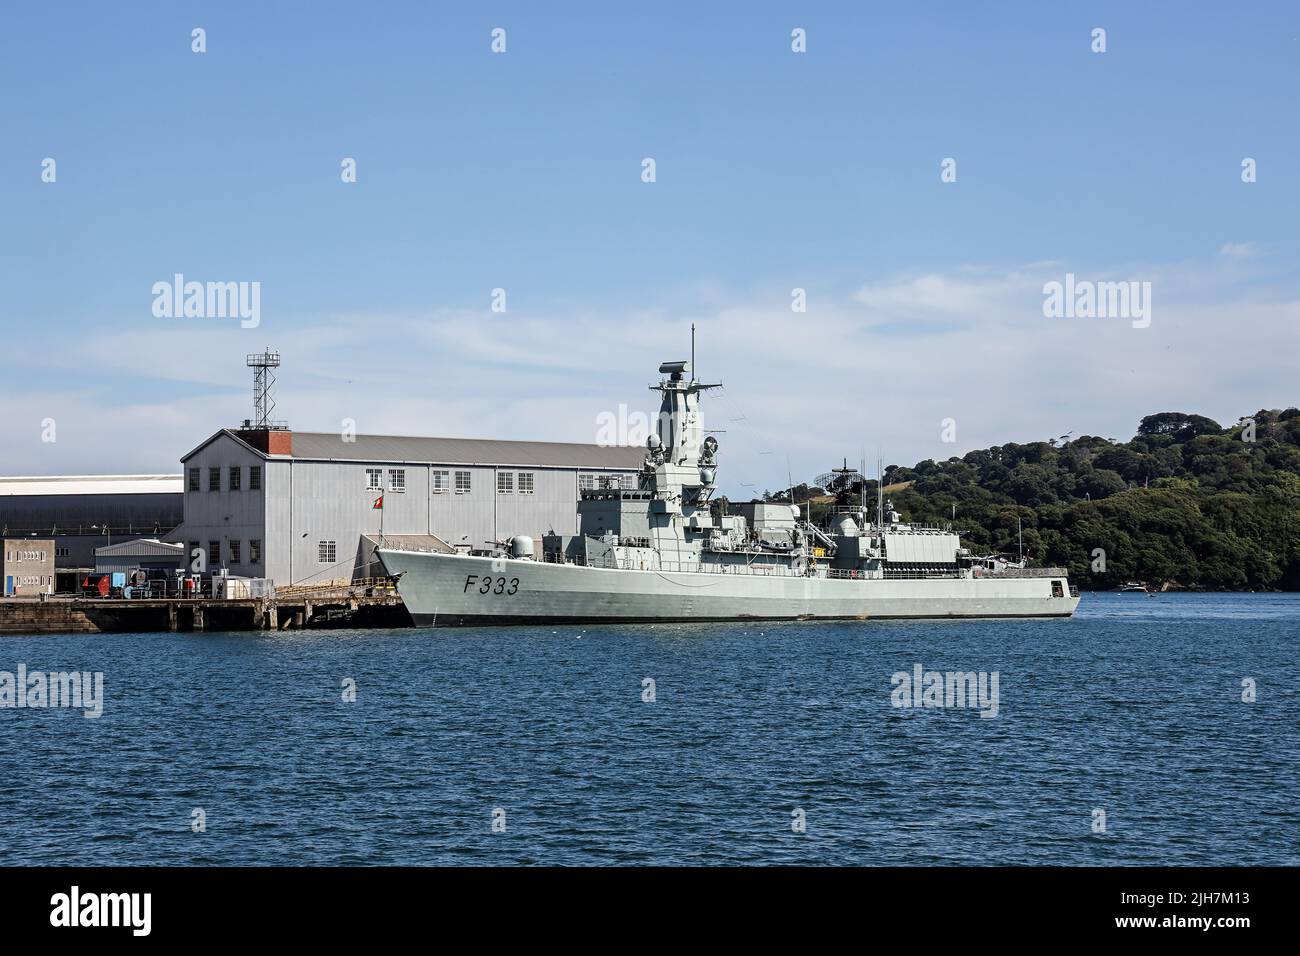 La Frigate F333 si è ancorata a South Yard, Dockyard di Devonport, sulle rive del Tamar. NRP Bartolomeu Dias è nella Marina portoghese. Foto Stock